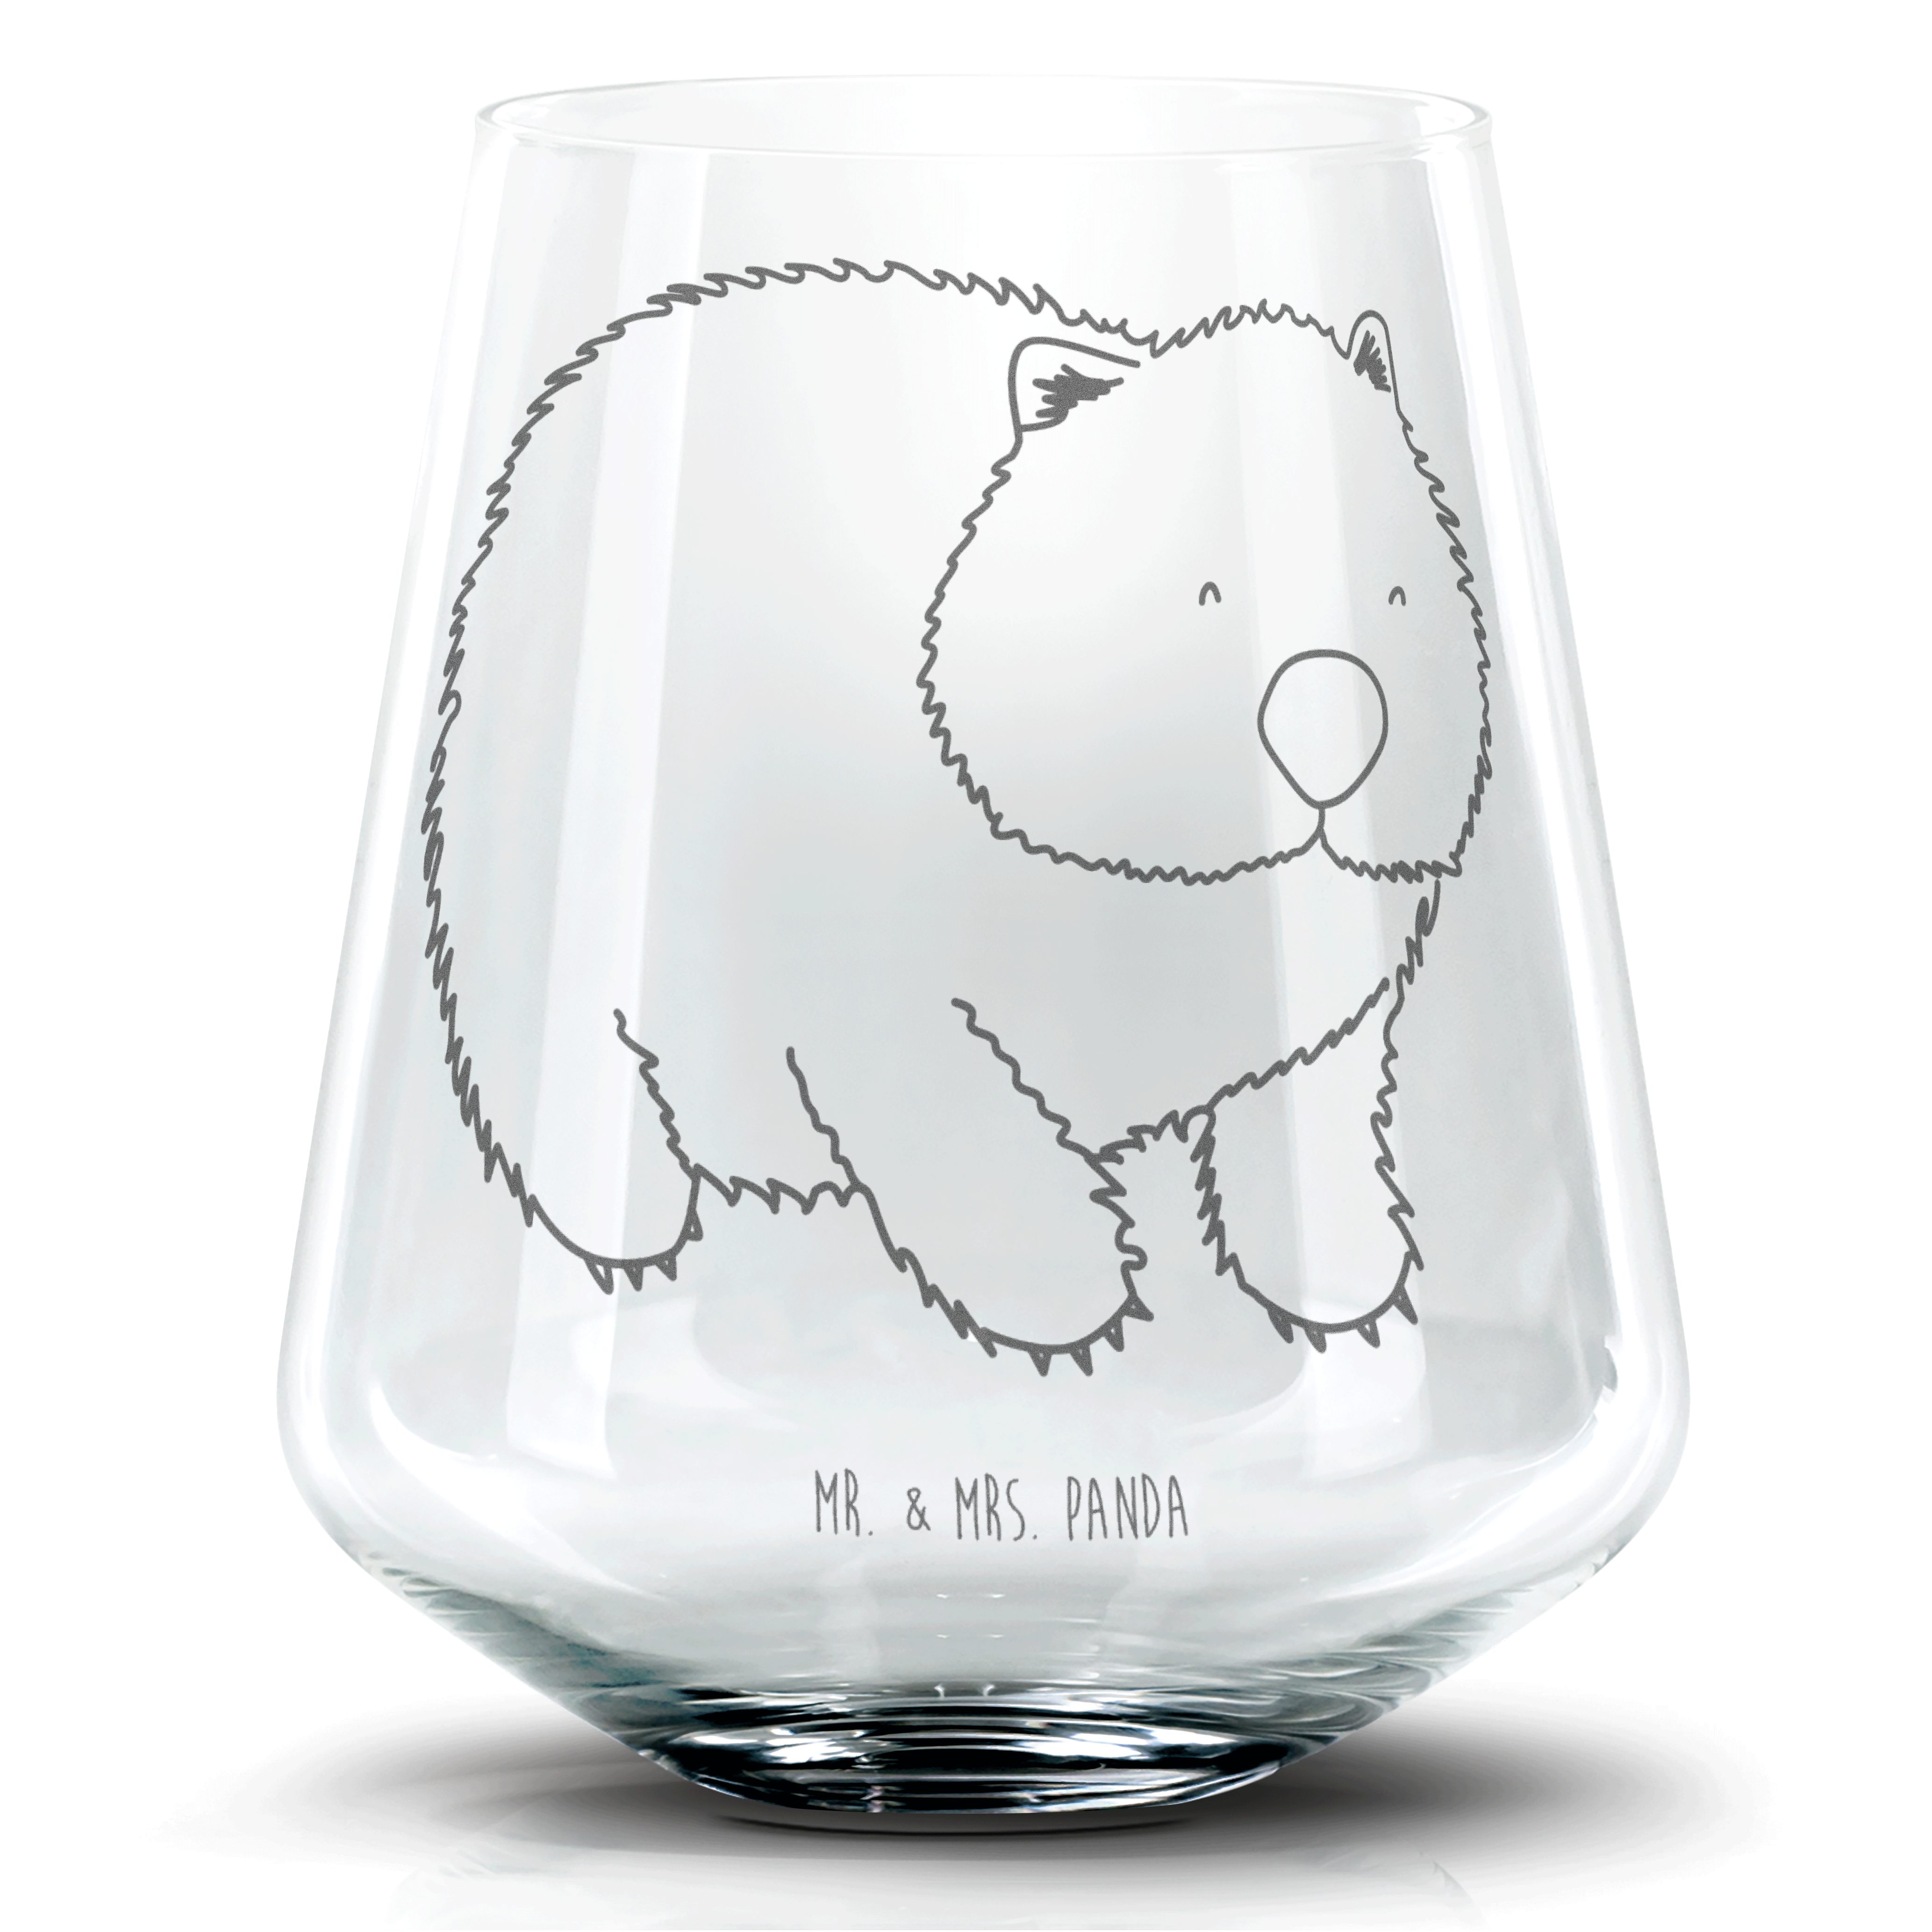 Mr. & Mrs. Panda Cocktailglas Wombat - Transparent - Geschenk, lustige Sprüche, Das Leben ist schön, Premium Glas, Zauberhafte Gravuren